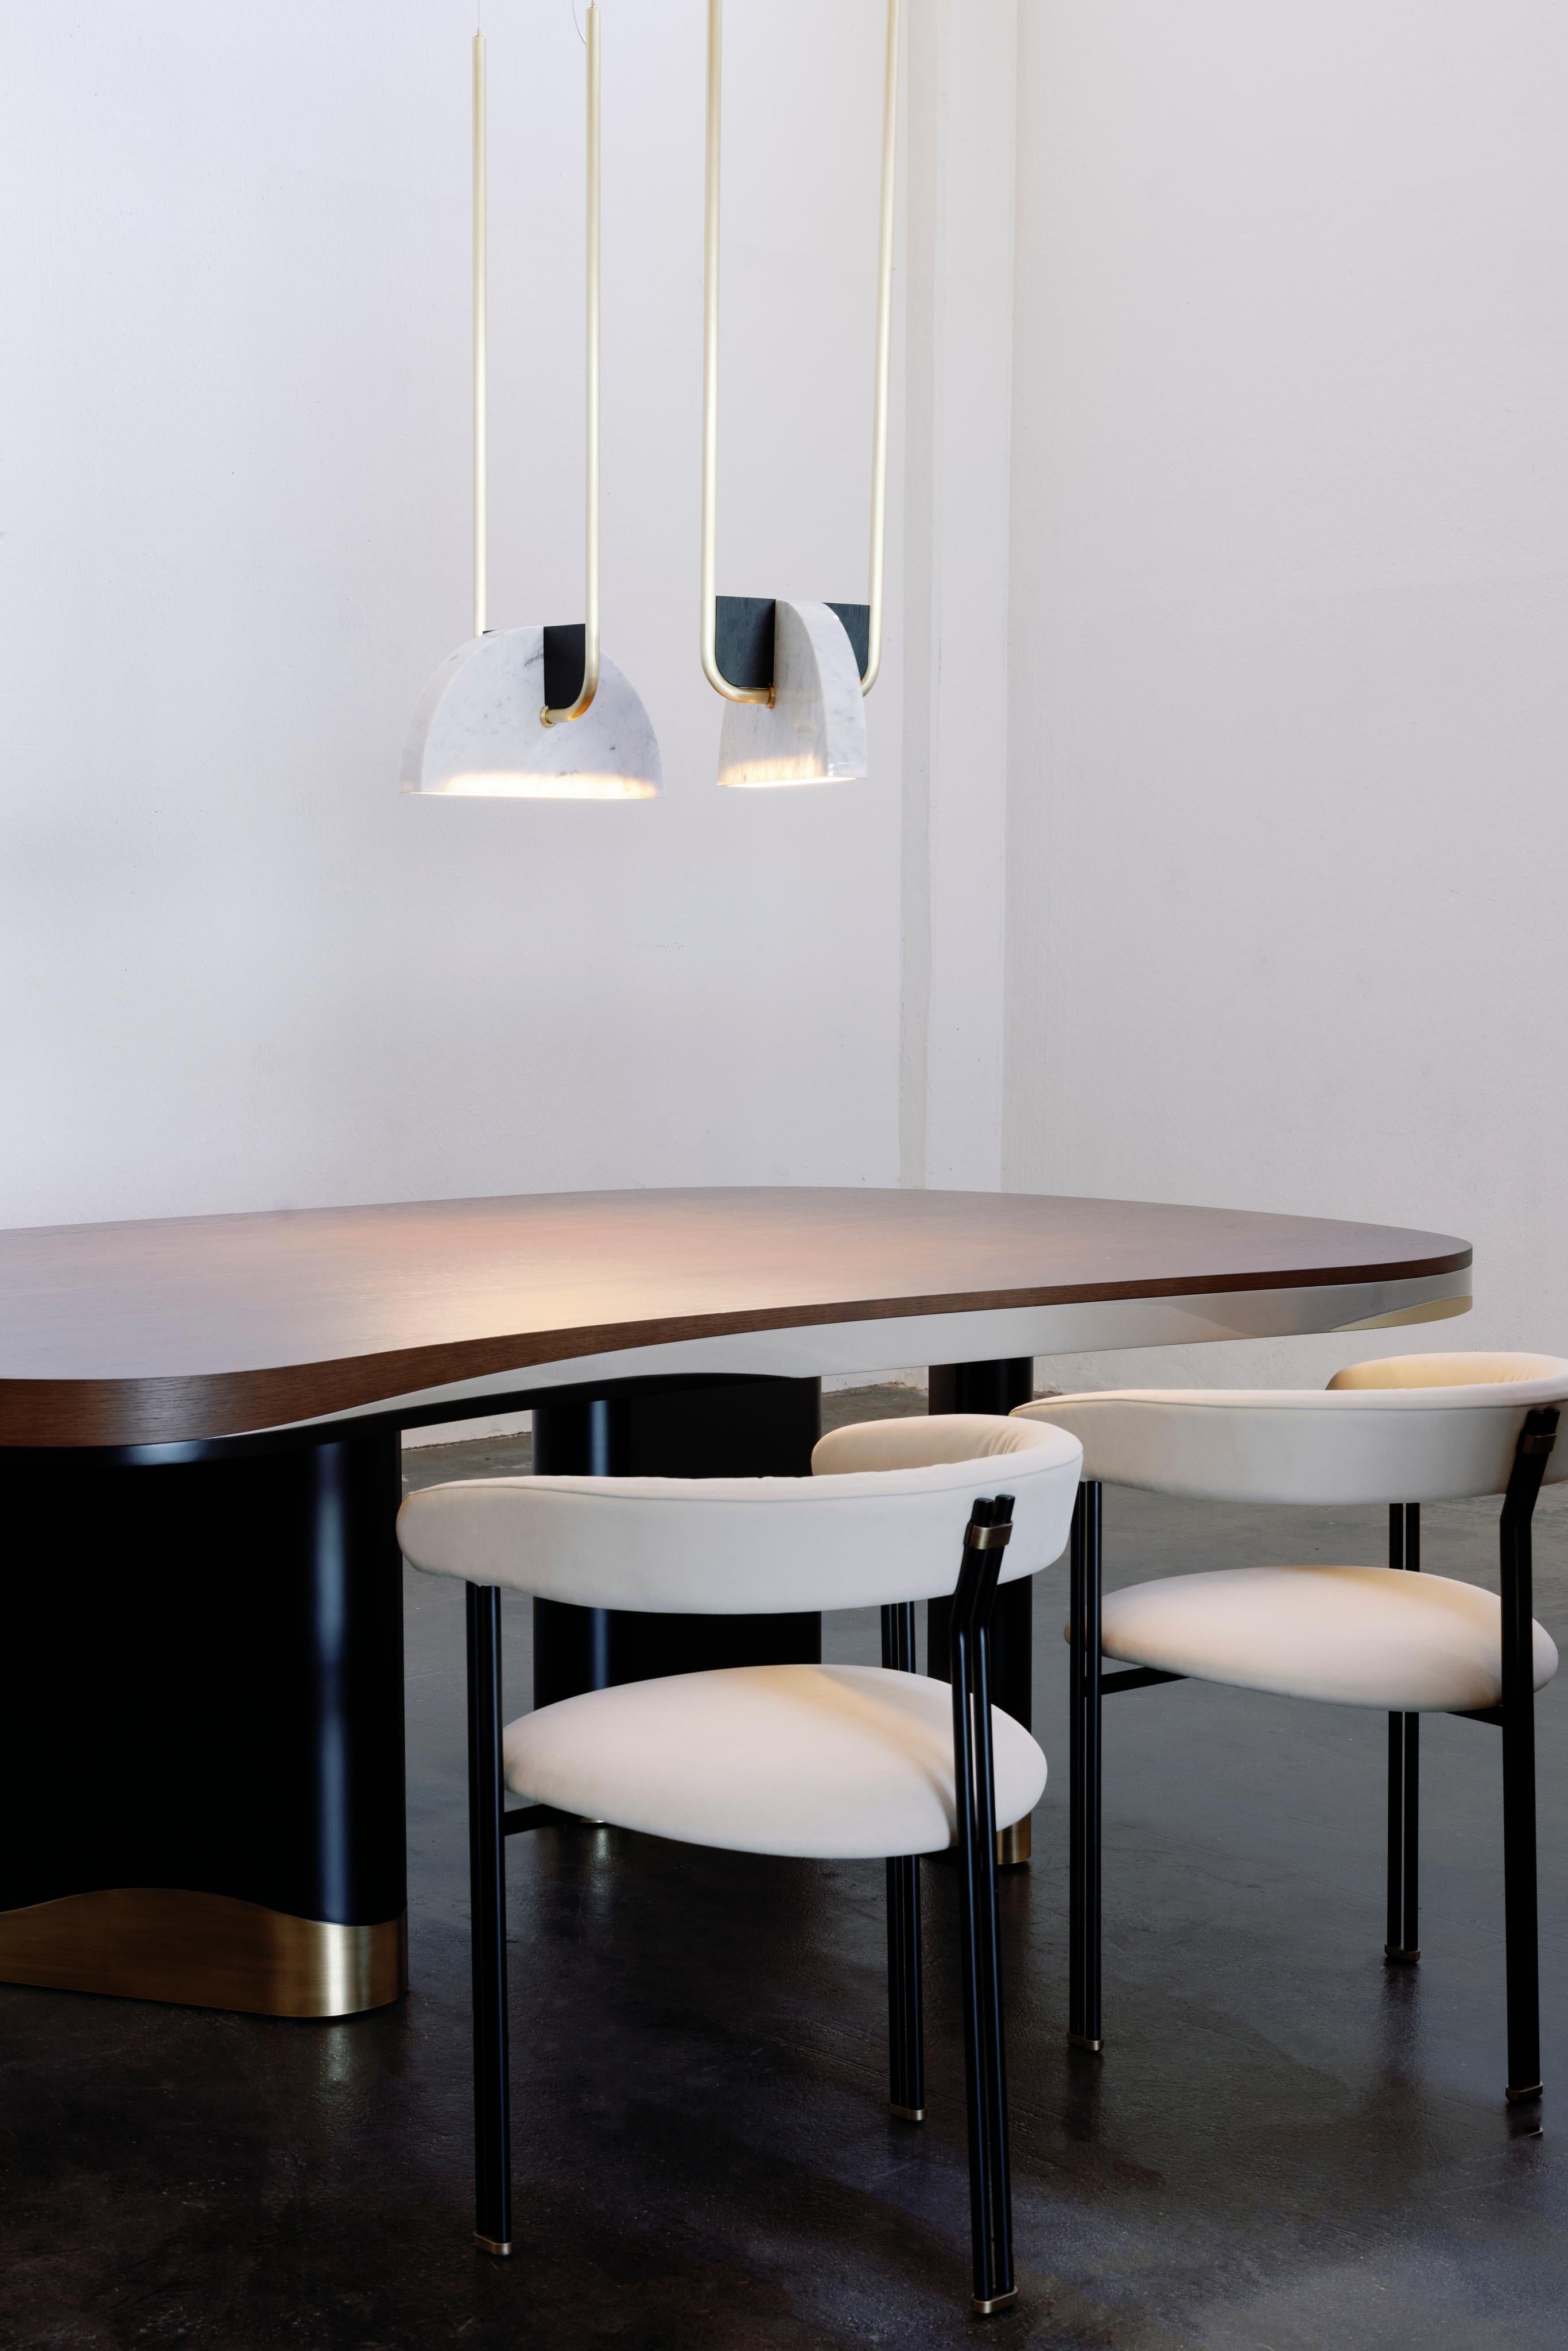 Table de salle à manger Sistelo, Collection Contemporary, fabriquée à la main au Portugal - Europe par Greenapple.

La table de salle à manger moderne Sistelo s'inspire du paysage captivant de Sistelo, en hommage à ce joyau caché aux abords du parc